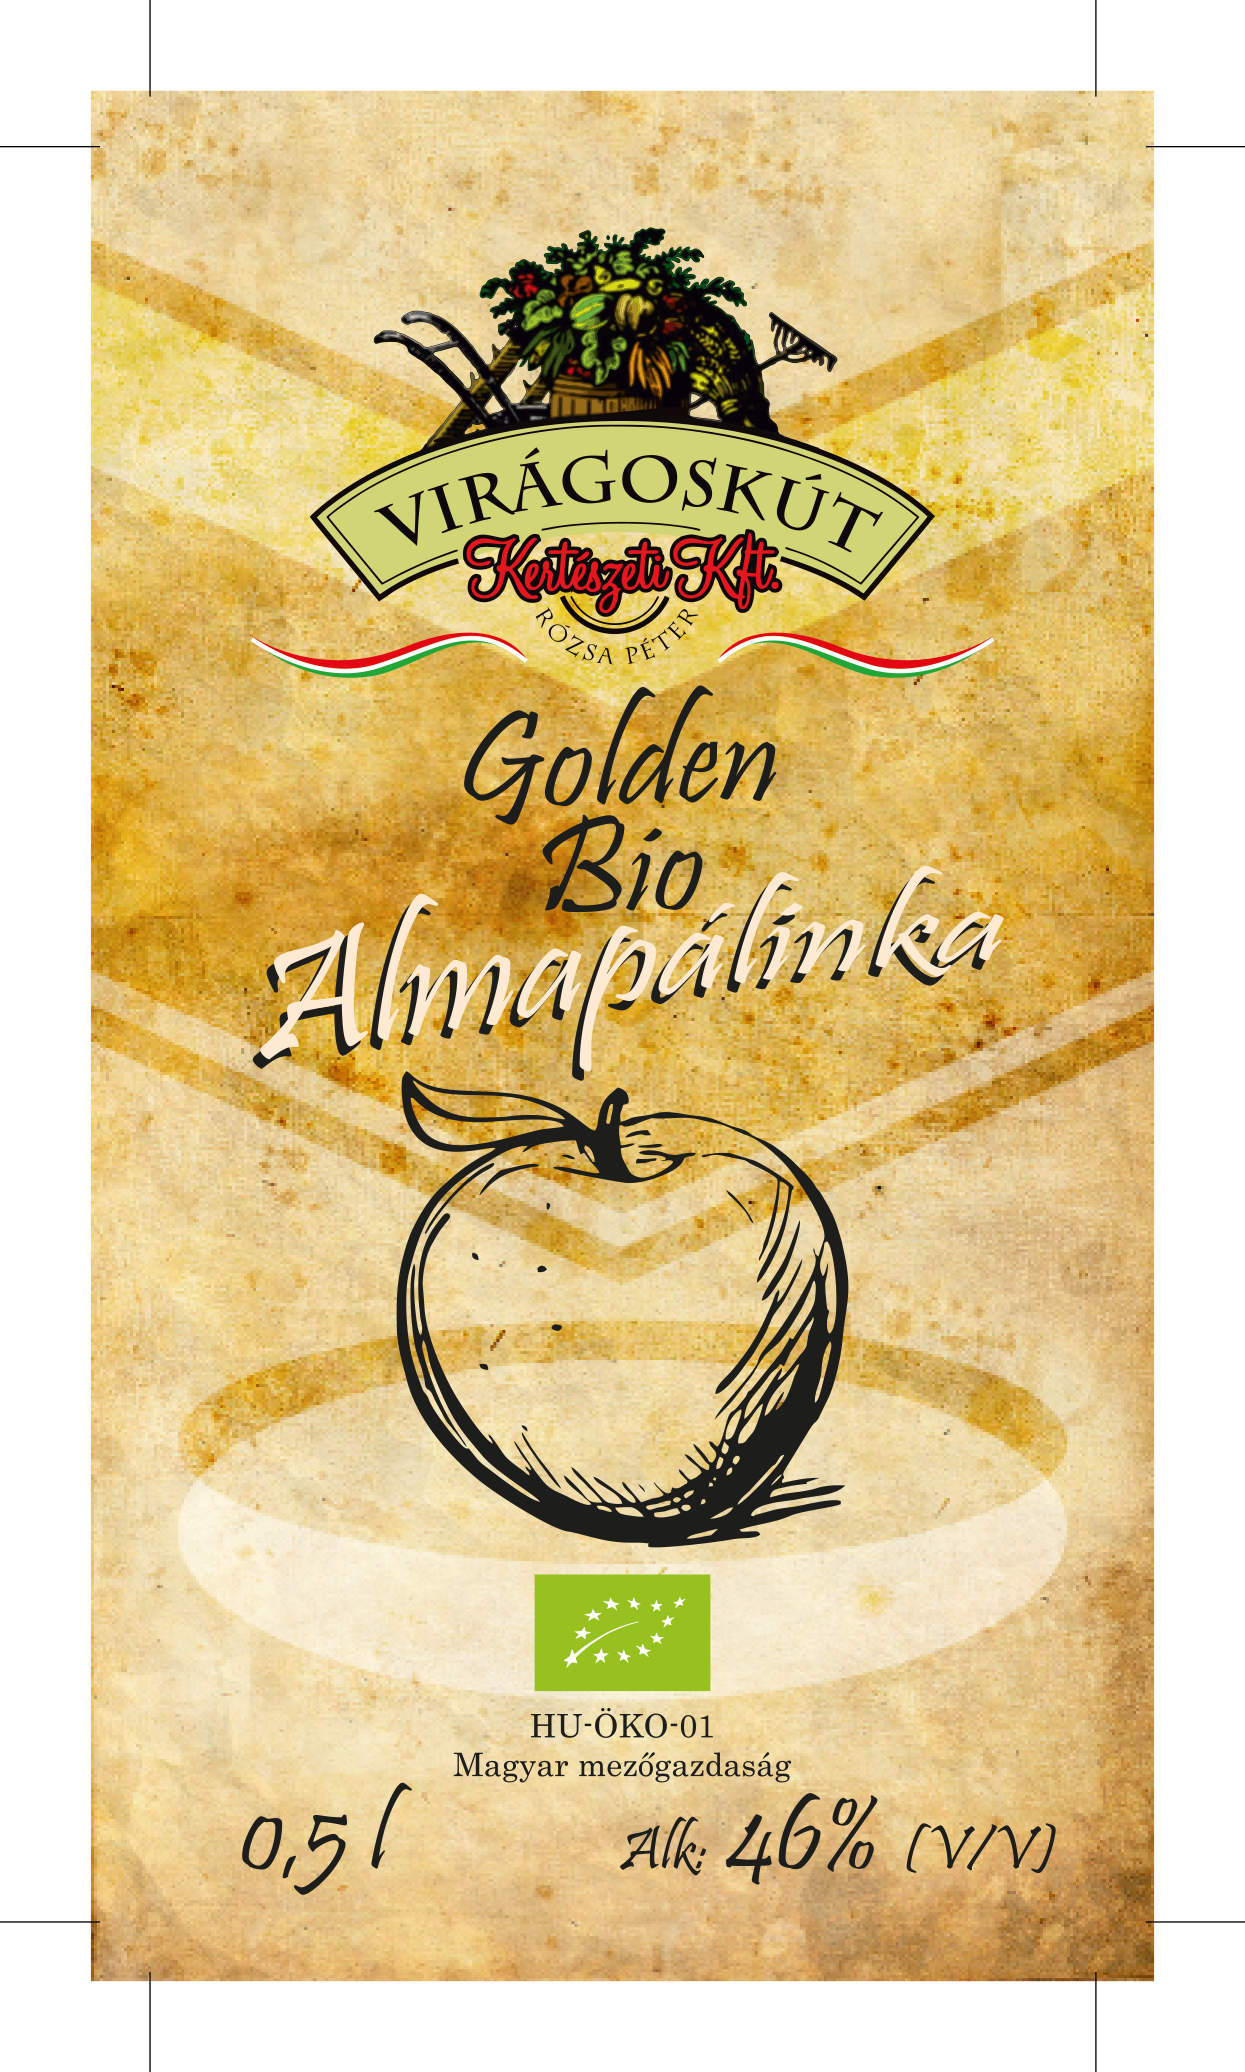 Bio almapálinka - Golden 500ml 46% /Virágoskút Kft./